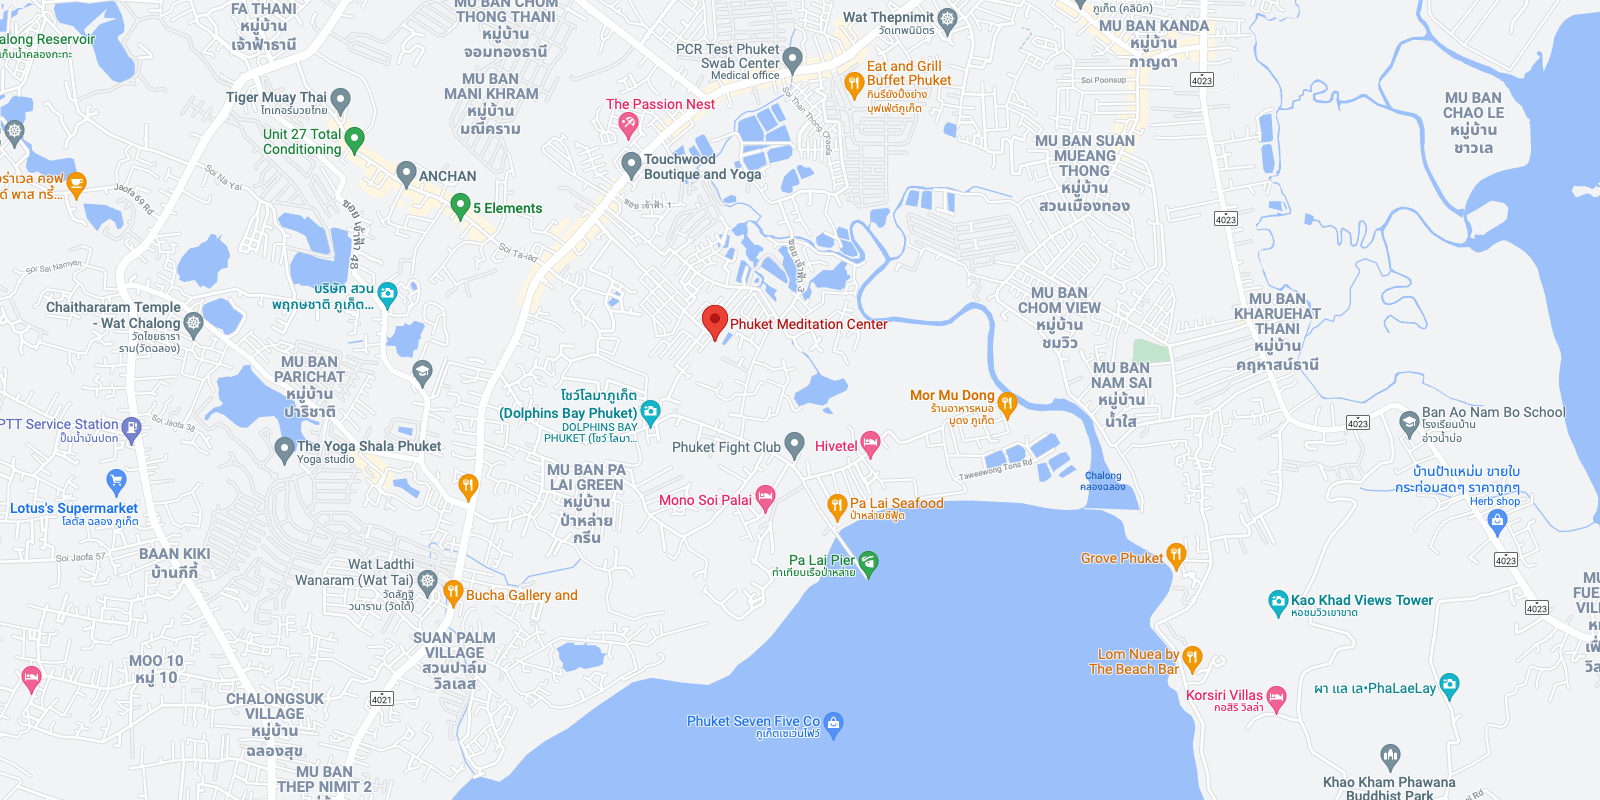 Phuket Meditation Center on Google Maps